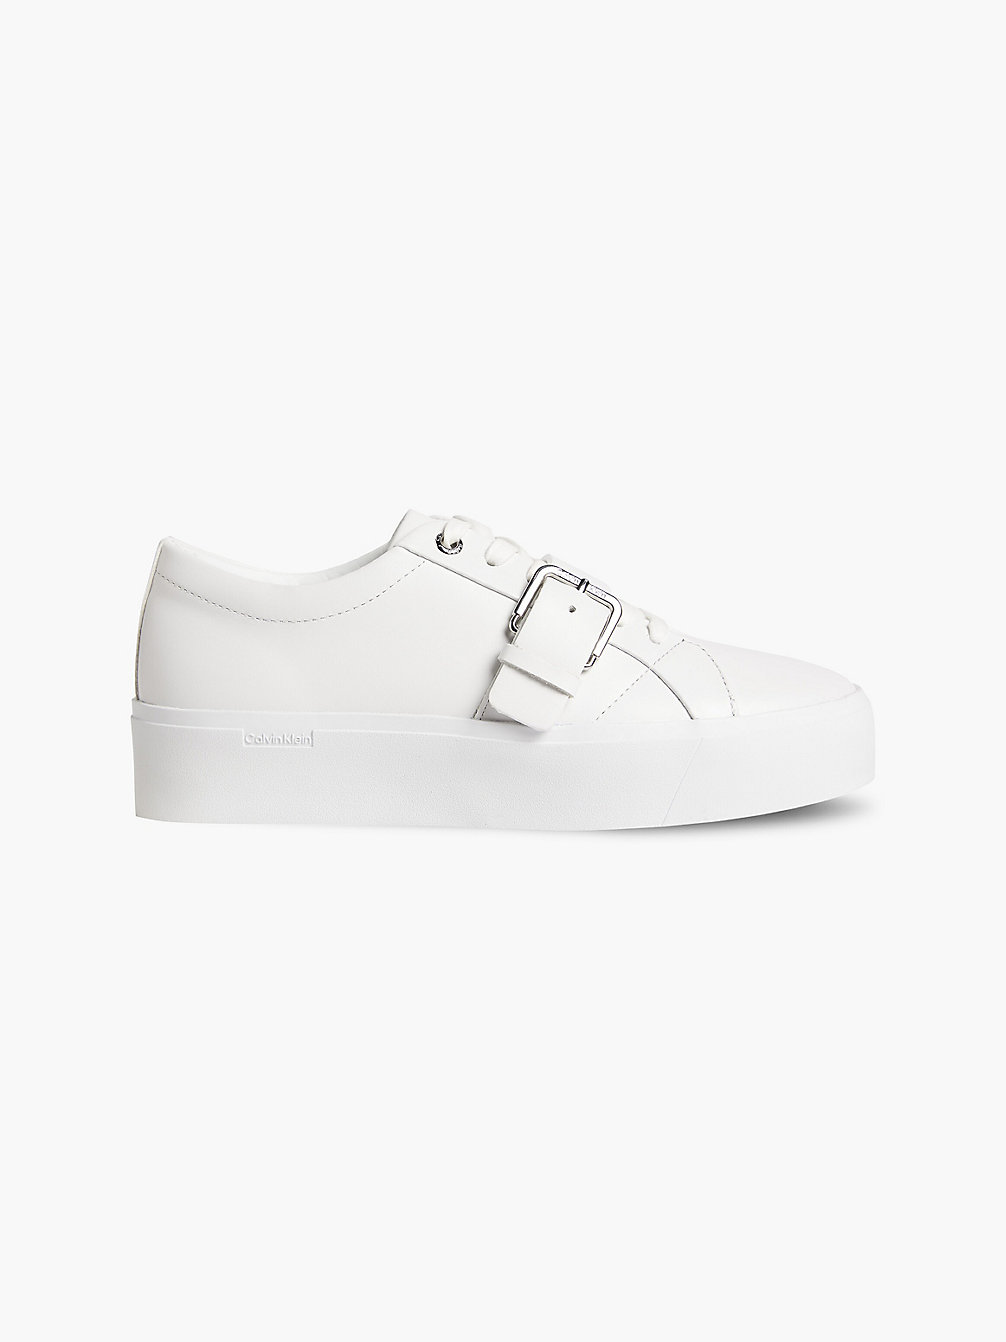 TRIPLE WHITE > Кожаные кроссовки на платформе > undefined Женщины - Calvin Klein